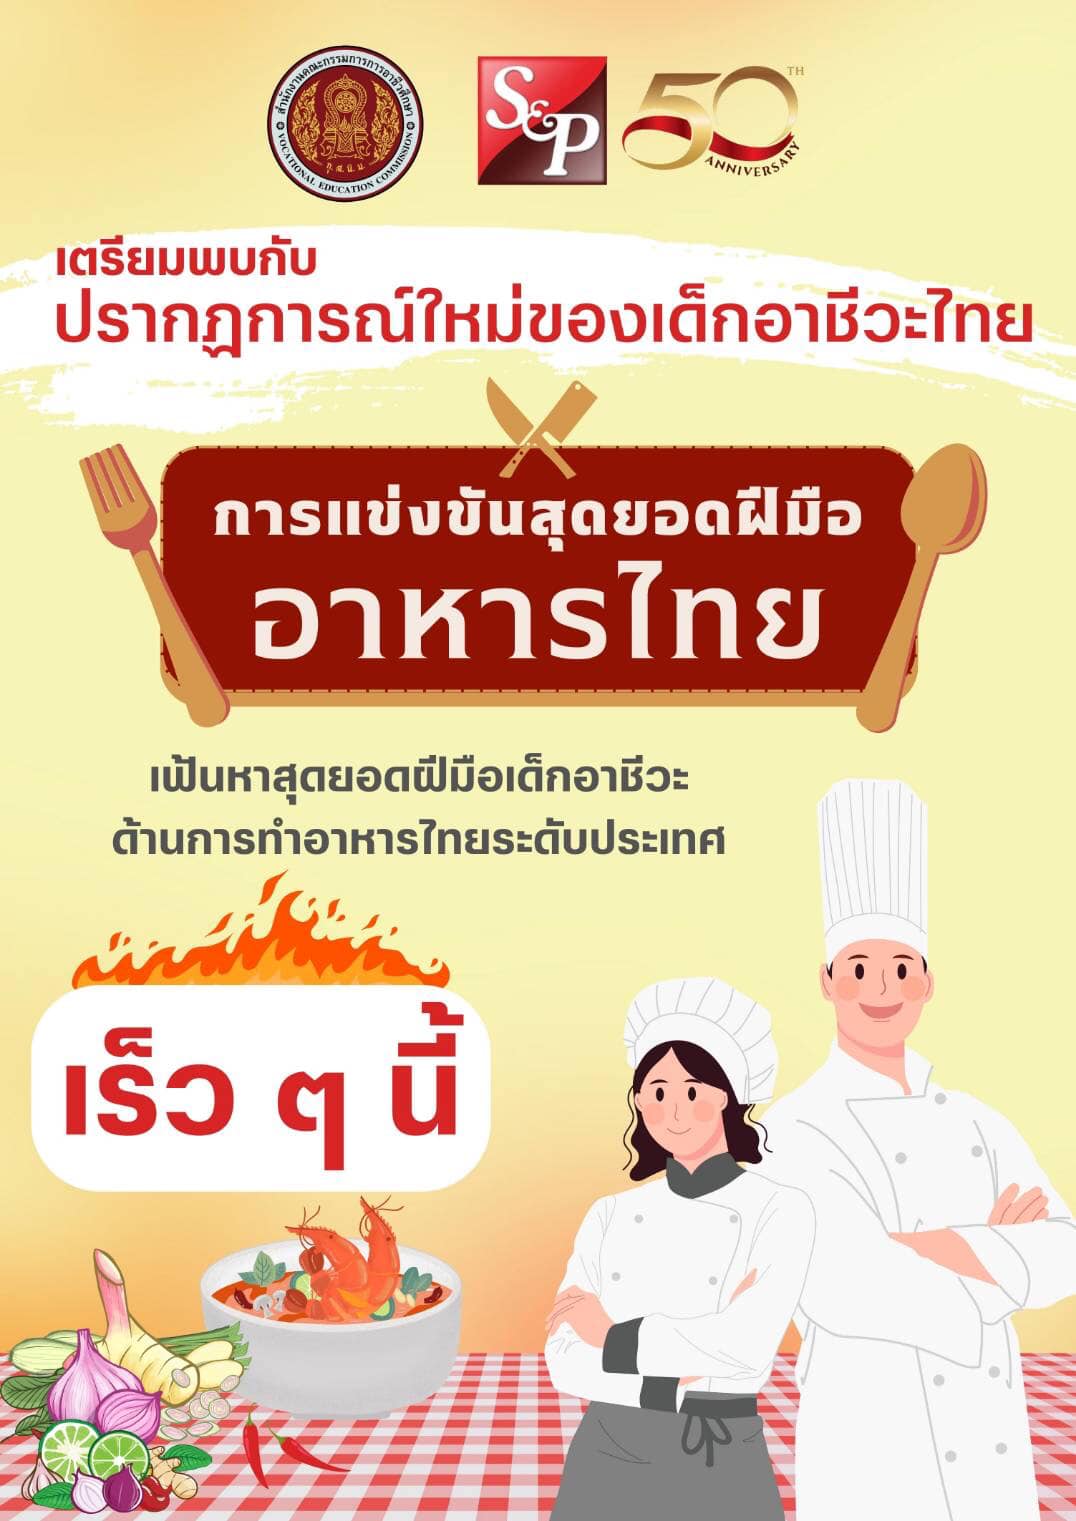 เตรียมพบกับปรากฏการณ์ใหม่ของเด็กอาชีวะไทยการแข่งขันสุดยอดฝีมืออาหารไทย